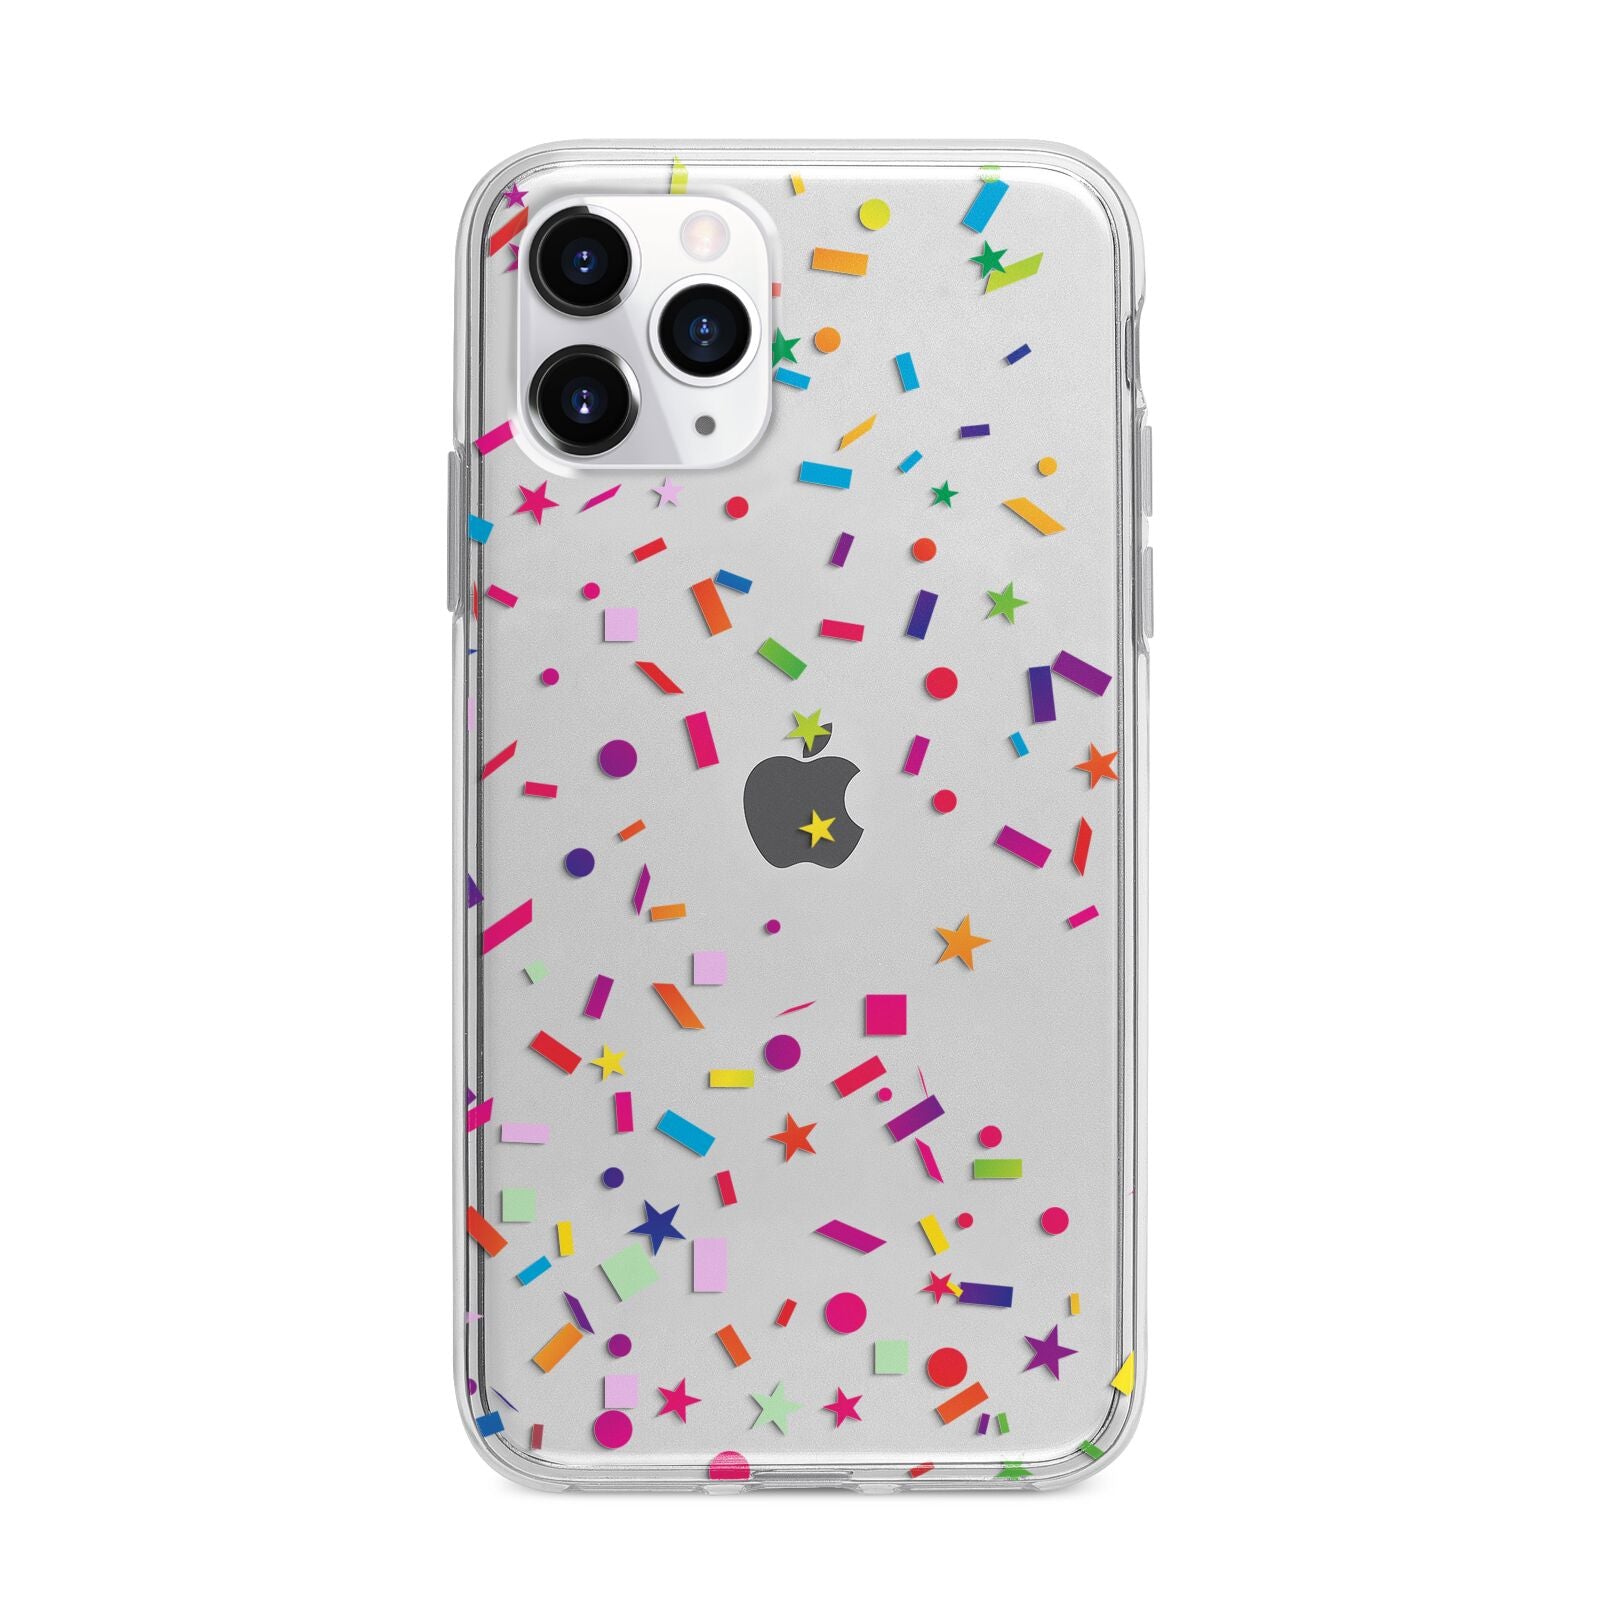 Confetti Apple iPhone 11 Pro Max in Silver with Bumper Case